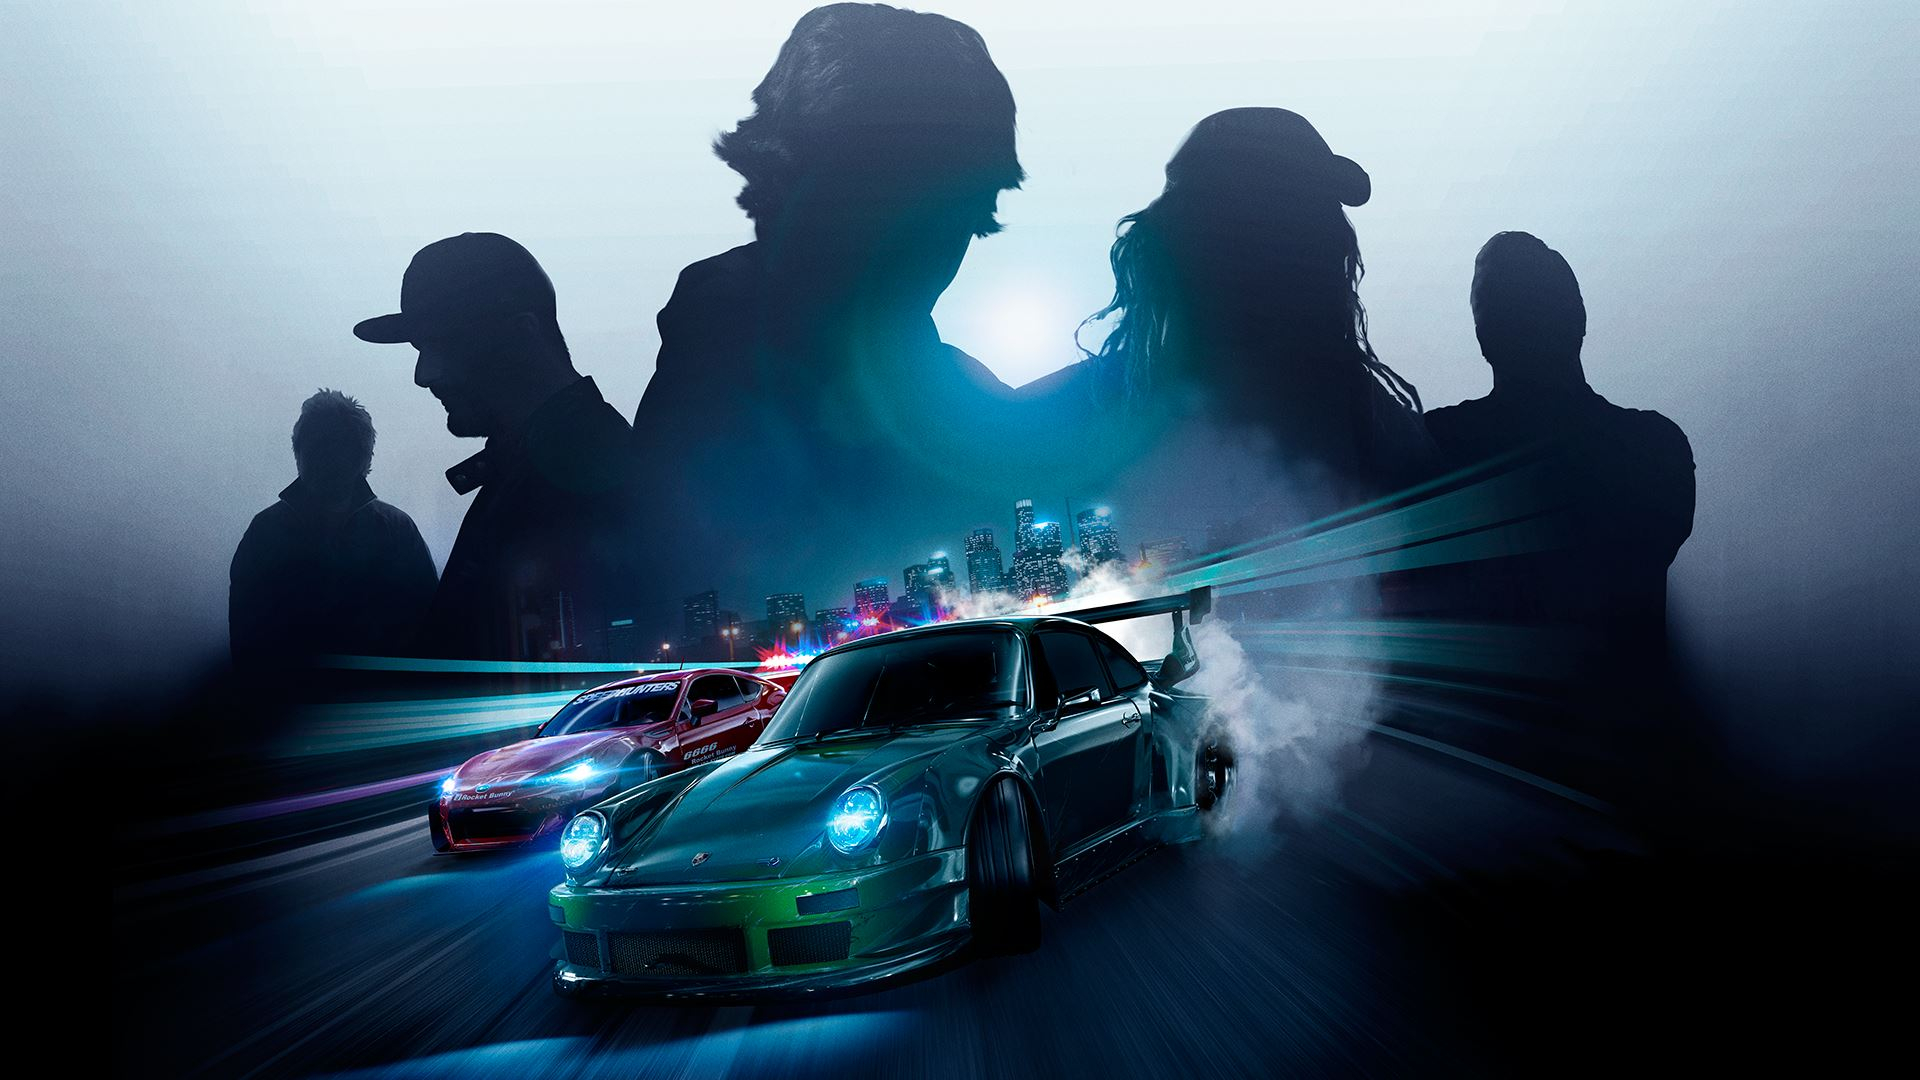 Слухи: до официального анонса новой Need for Speed осталось меньше двух недель, а релиз перенесли на декабрь